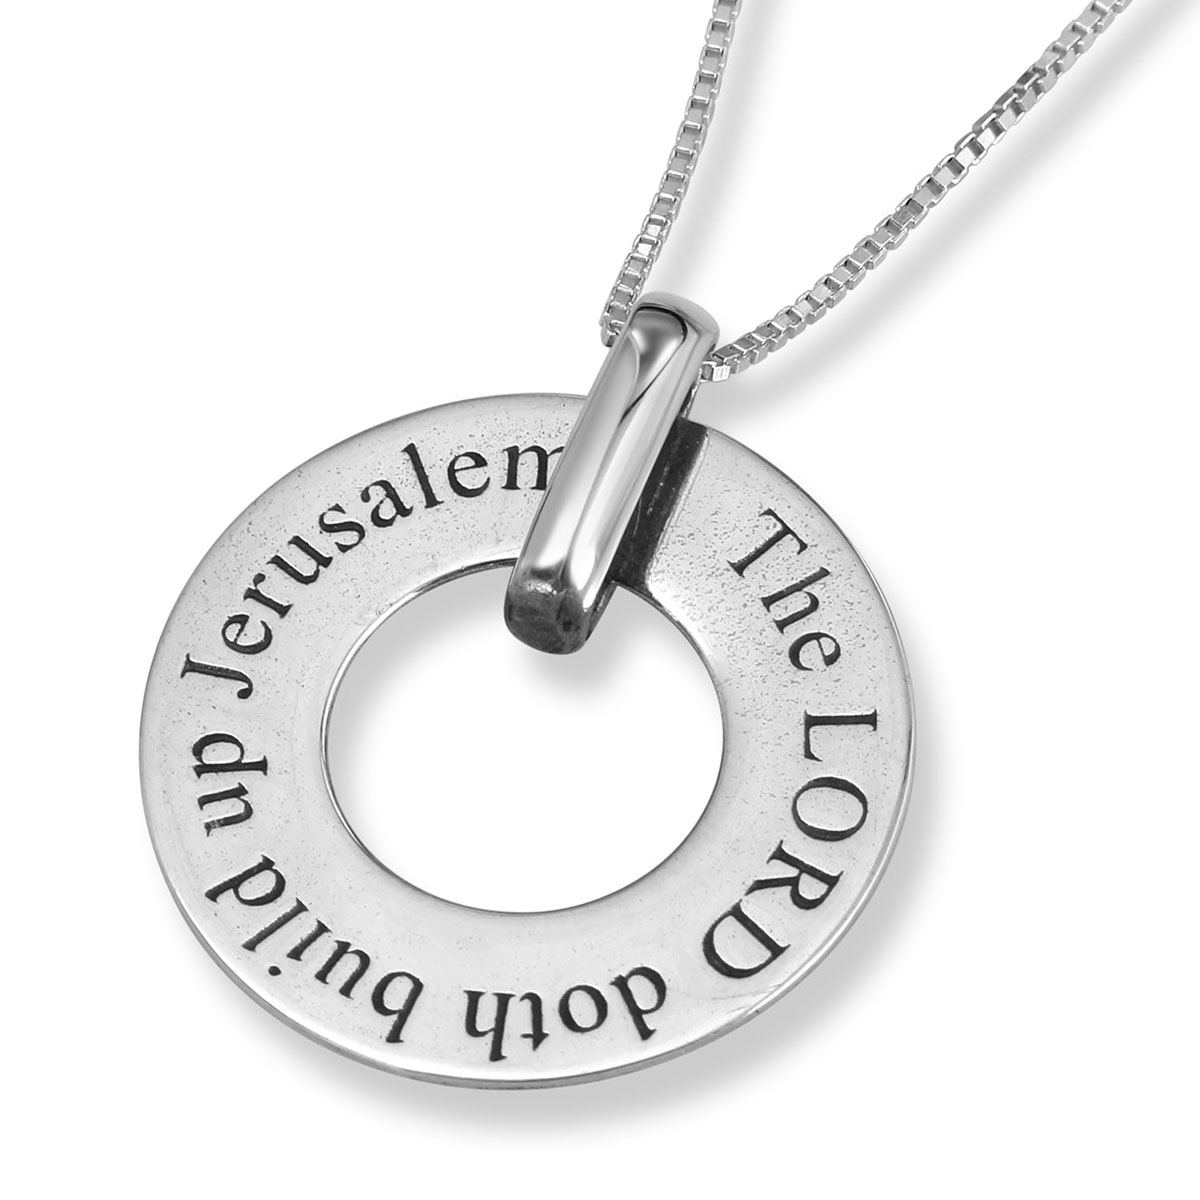 Sterling Silver Disk Necklace with “Build Up Jerusalem” Inscription-Psalm 147:2 - 1